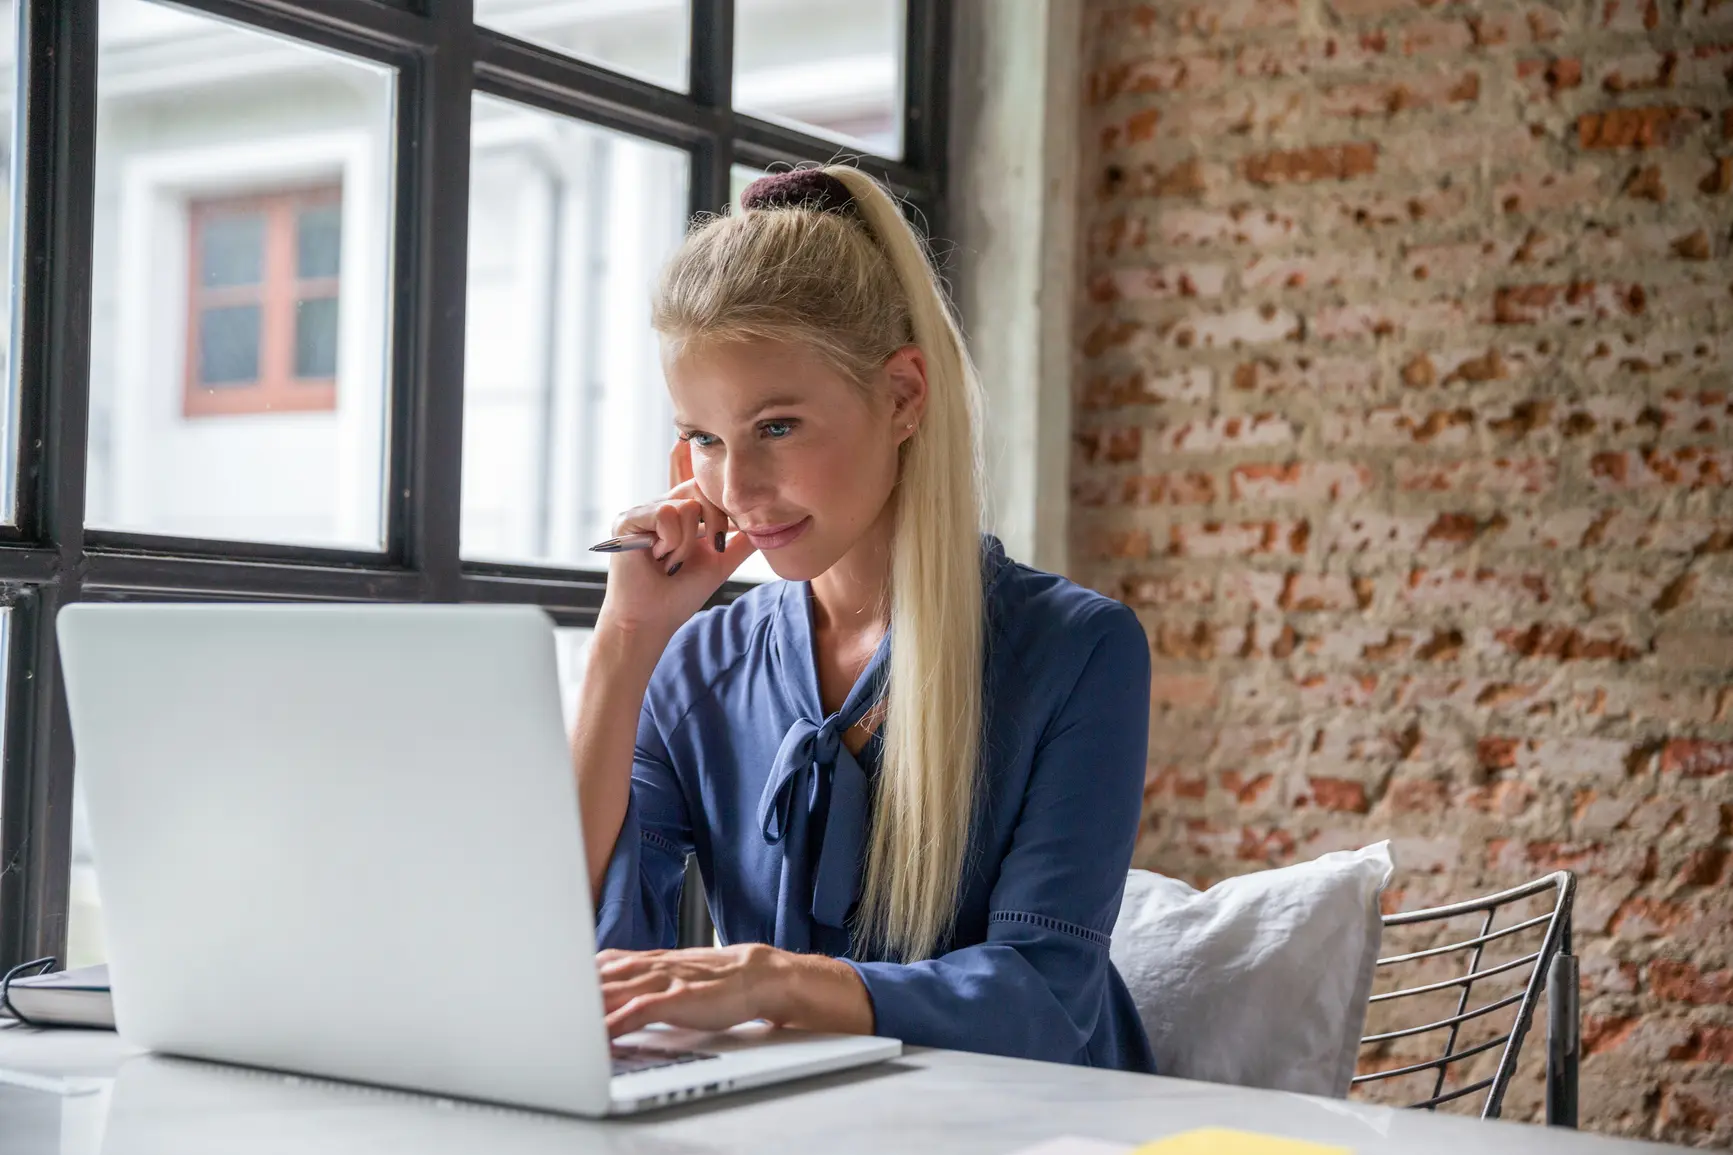 Eine junge Frau sitzt mit einer Hand am Laptop, einer Hand am Gesicht vor ihrem Laptop. Im Hintergrund ist eine Mauerwand zu sehen.